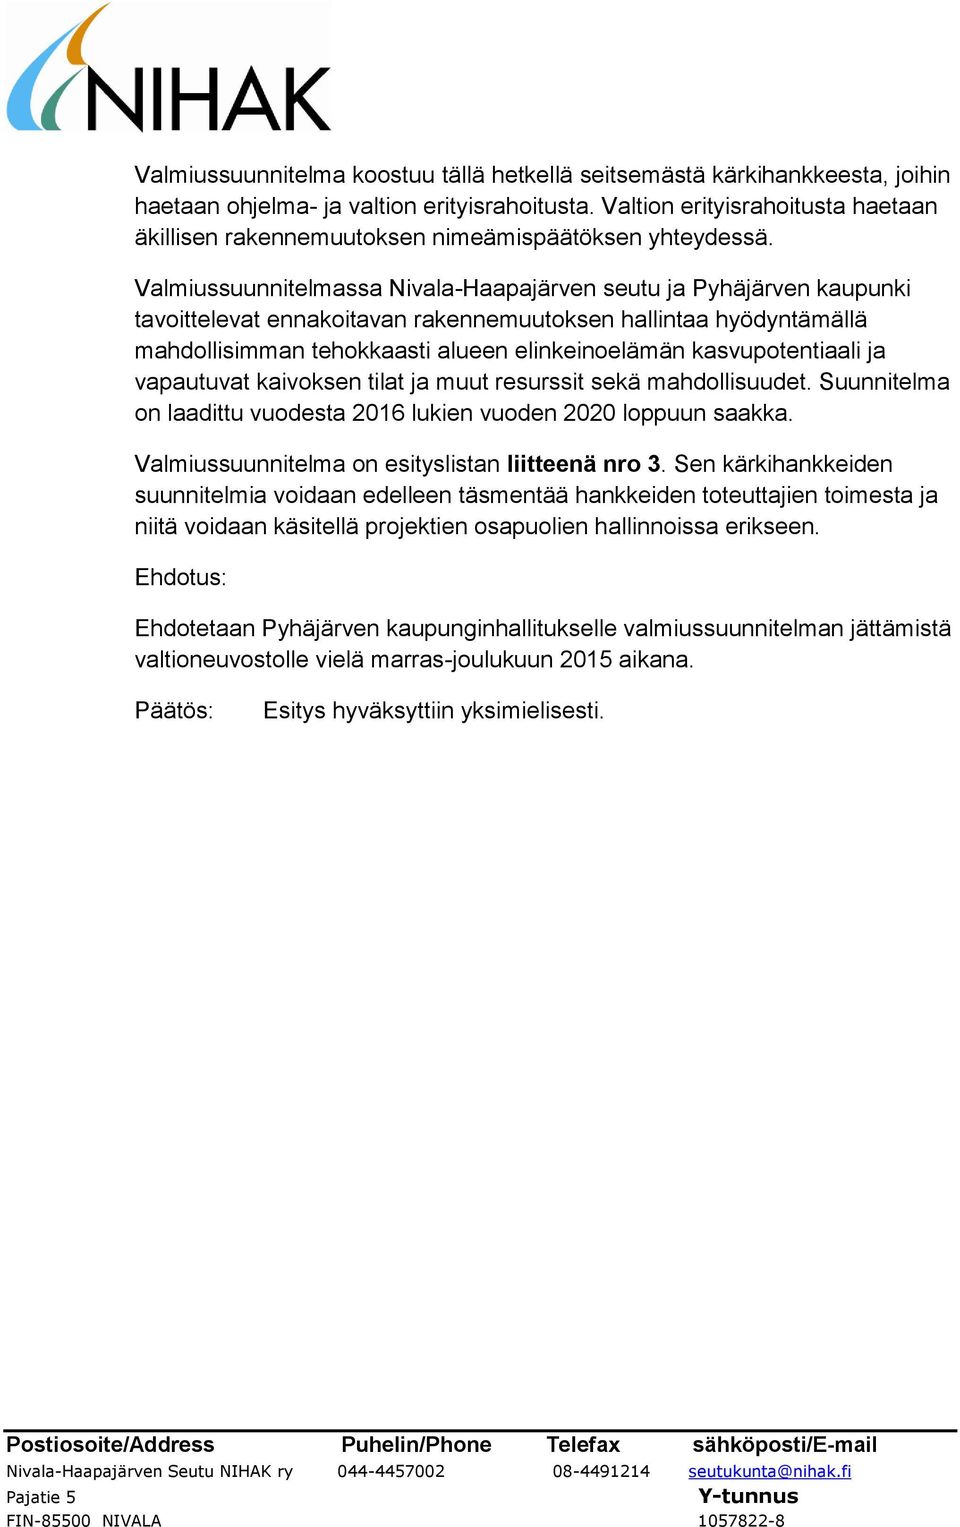 Valmiussuunnitelmassa Nivala-Haapajärven seutu ja Pyhäjärven kaupunki tavoittelevat ennakoitavan rakennemuutoksen hallintaa hyödyntämällä mahdollisimman tehokkaasti alueen elinkeinoelämän